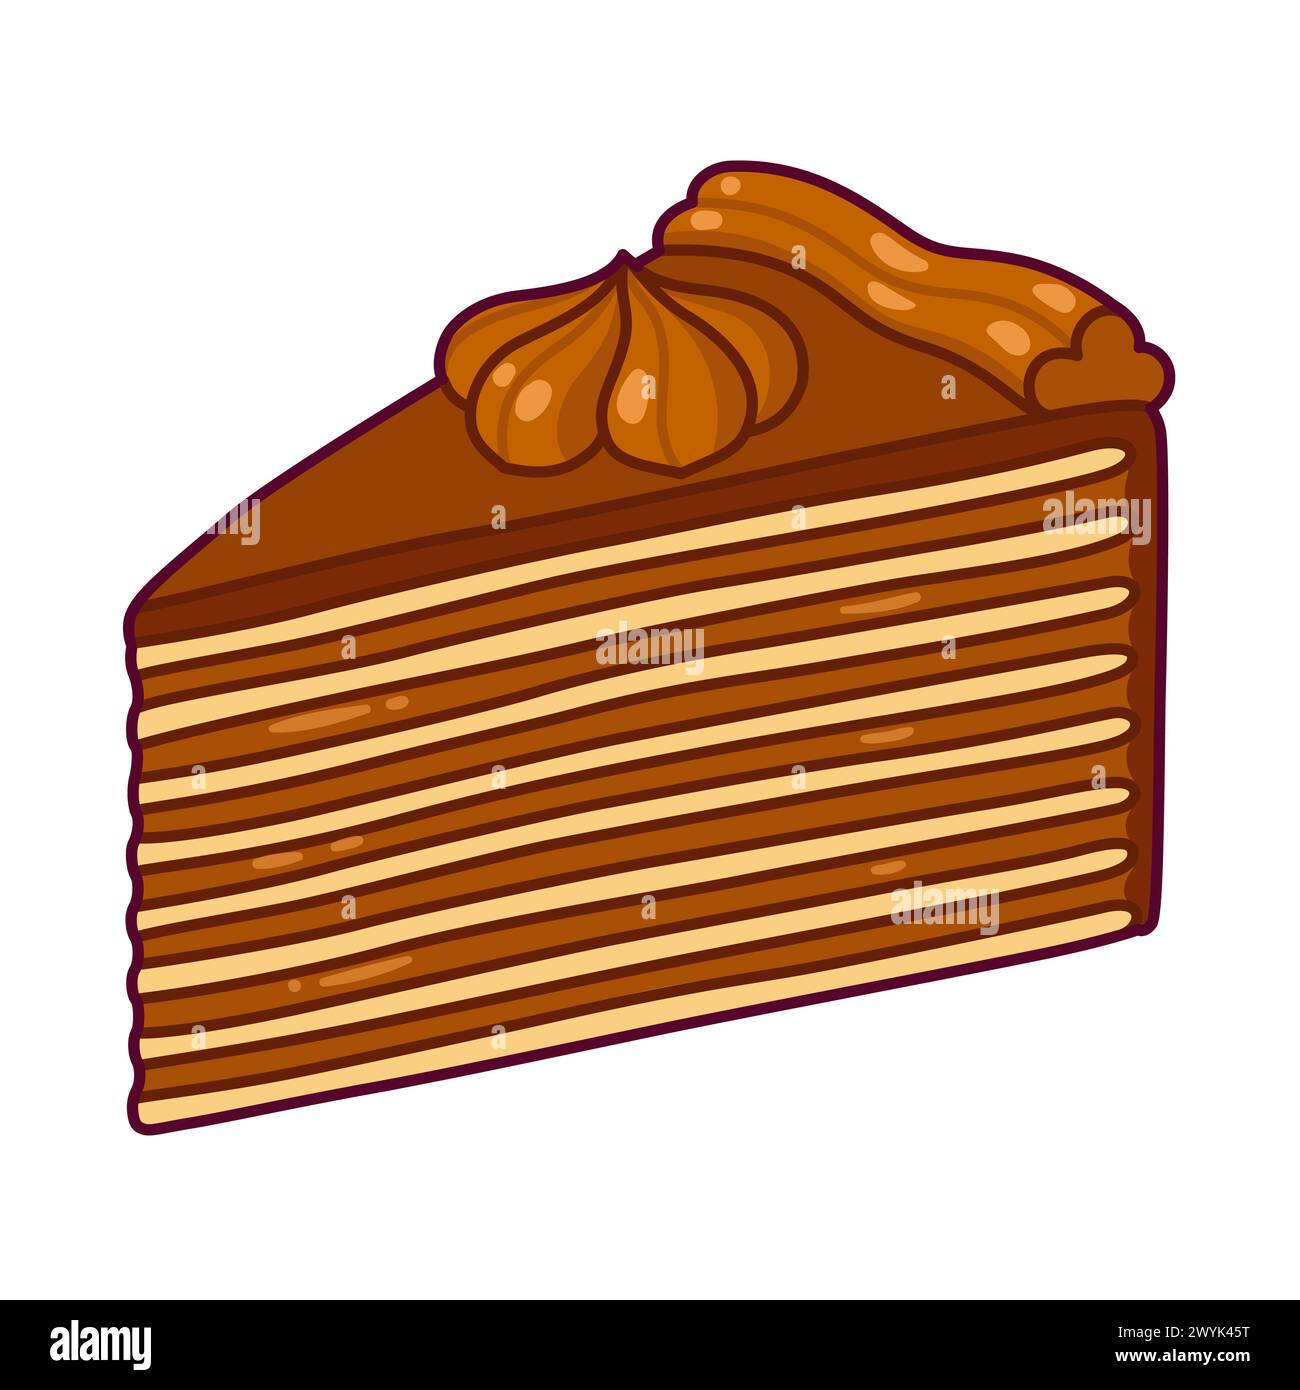 Ein Stück traditioneller chilenischer Torta MIL Hojas-Kuchen. Mille-Feuille-Gebäck mit vielen dünnen Schichten und Dulce de leche (Manjar)-Füllung. Zeichentrickzeichnung, V Stock Vektor